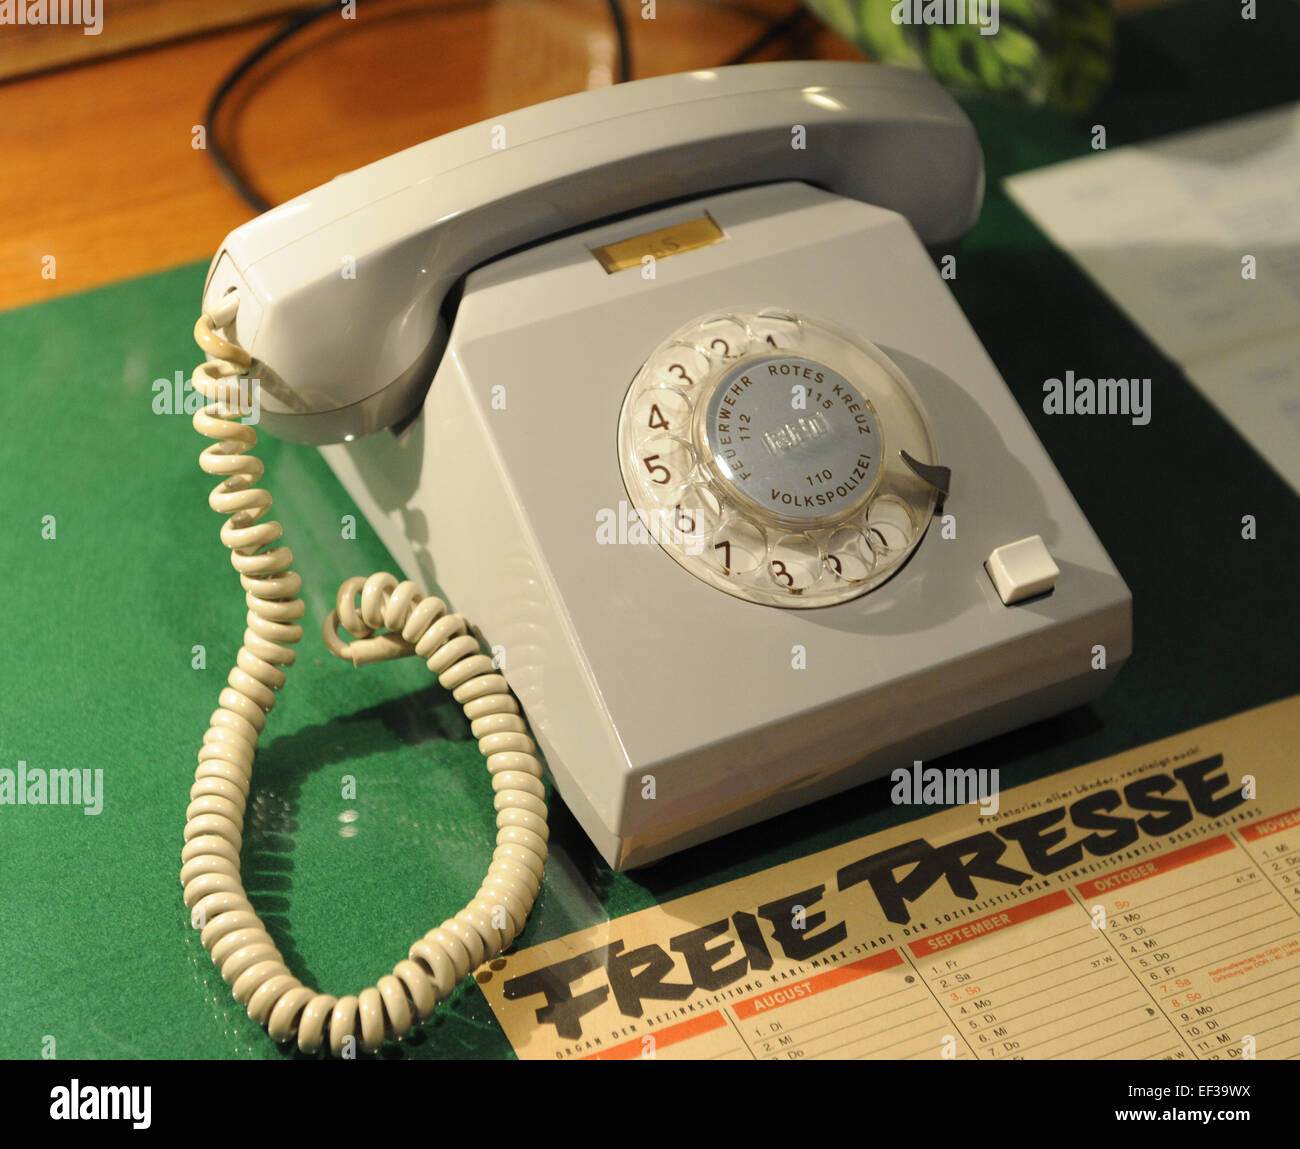 République démocratique allemande. Reproduction d'une table de travail. Téléphone. DDR Museum. Berlin. L'Allemagne. Banque D'Images